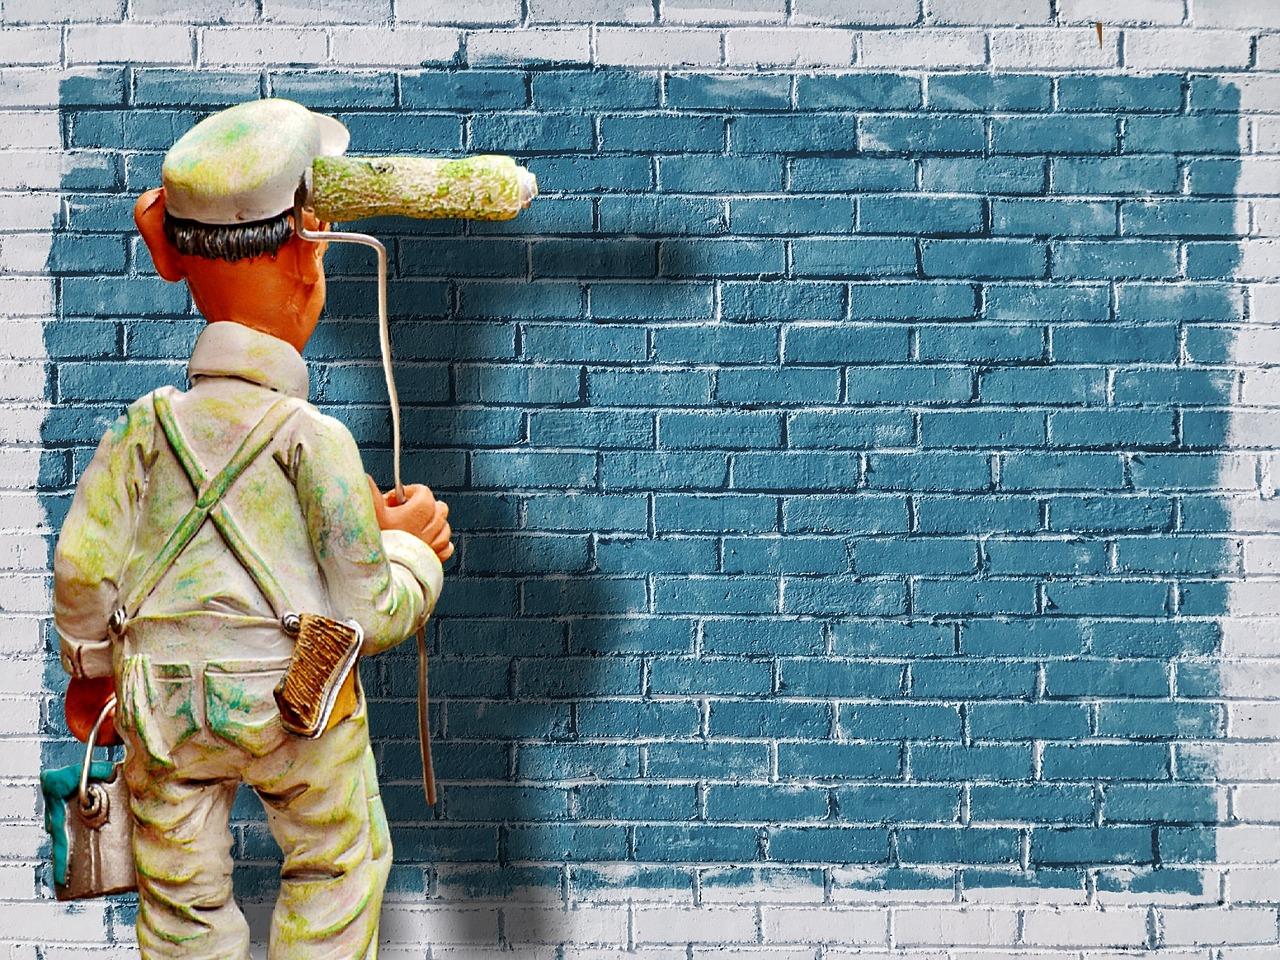 Praktyczny przewodnik: Jak stworzyć własne szablony do malowania ścian i osiągnąć profesjonalne efekty